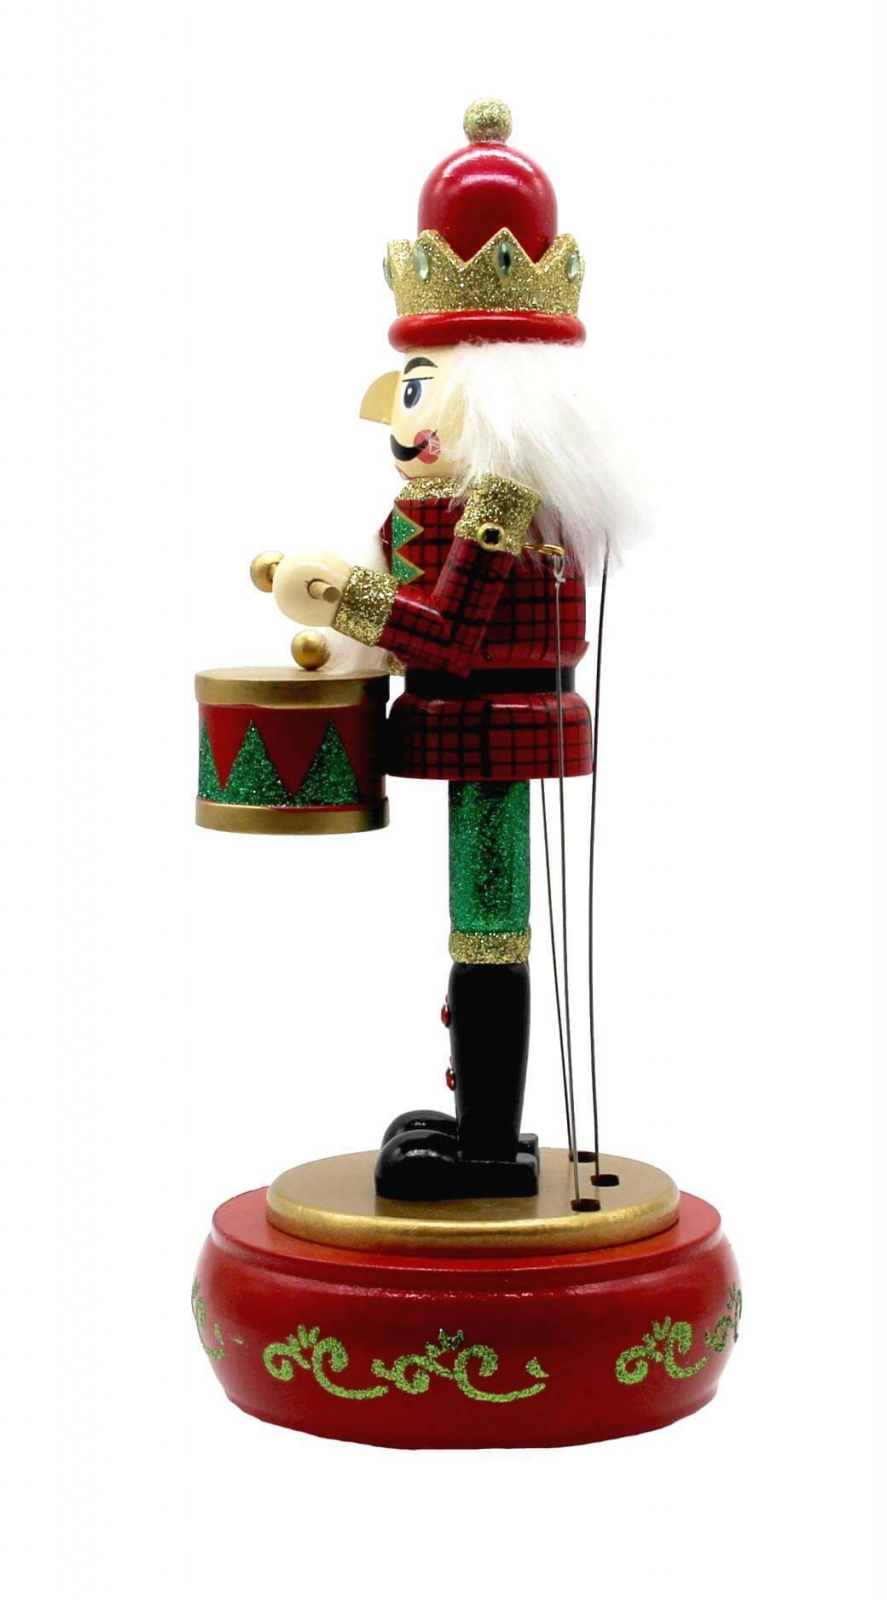 13 Musical Nutcracker Wooden Music Box Puppet w/ Drums